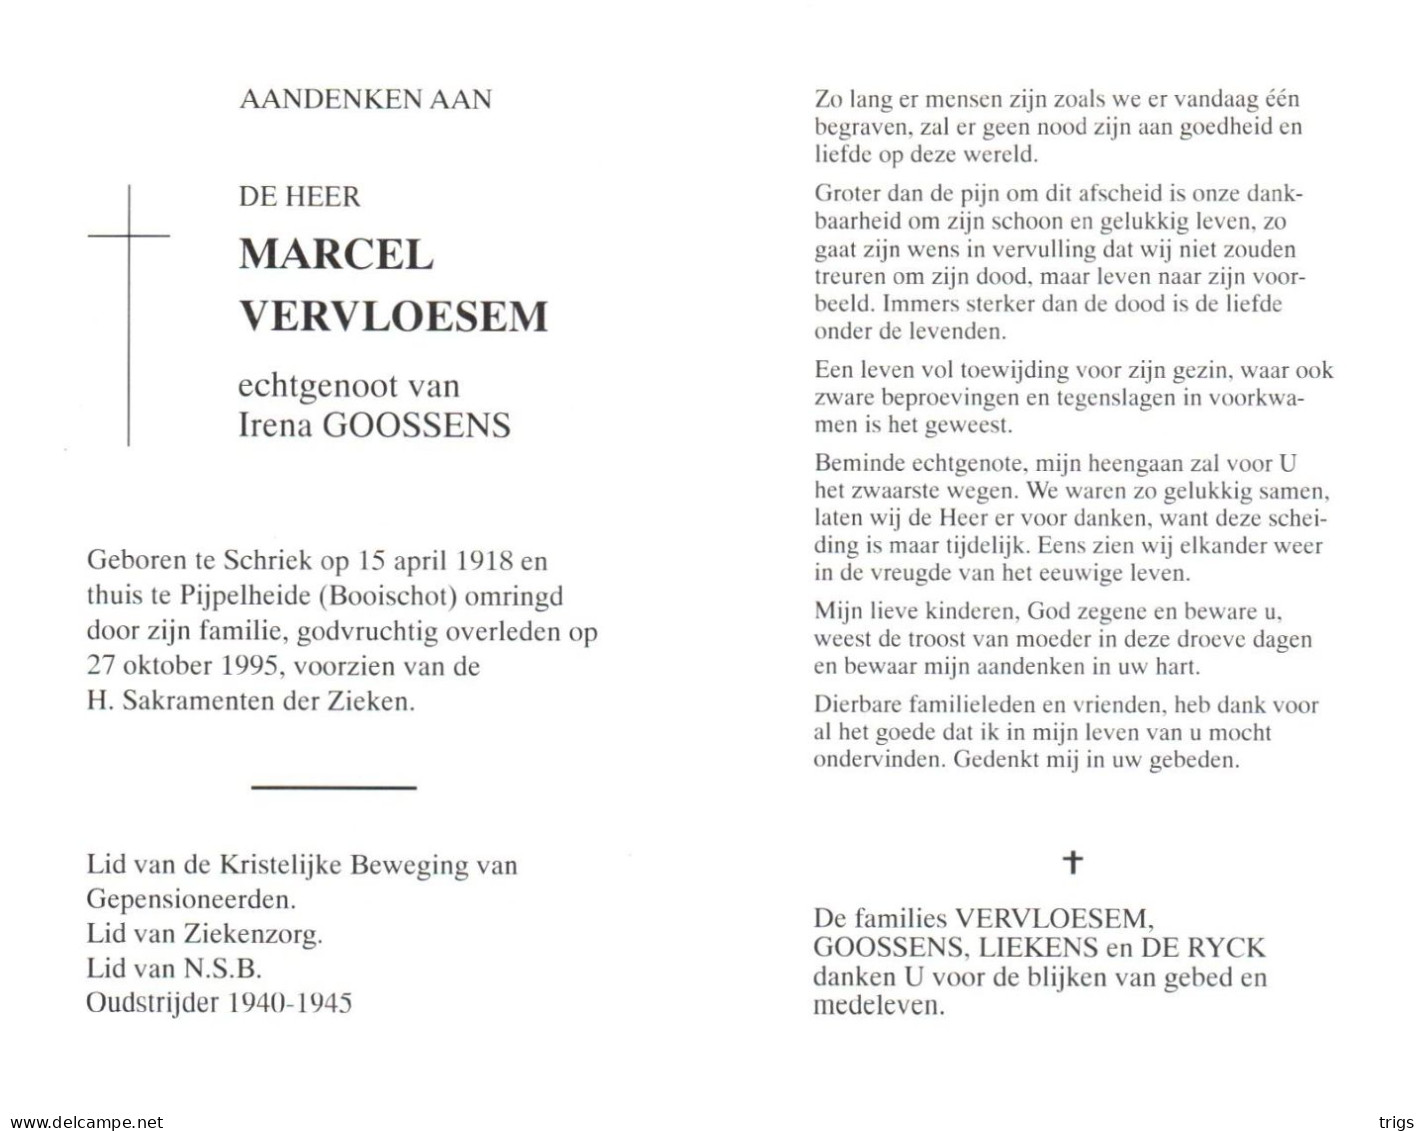 Marcel Vervloesem (1918-1995) - Images Religieuses